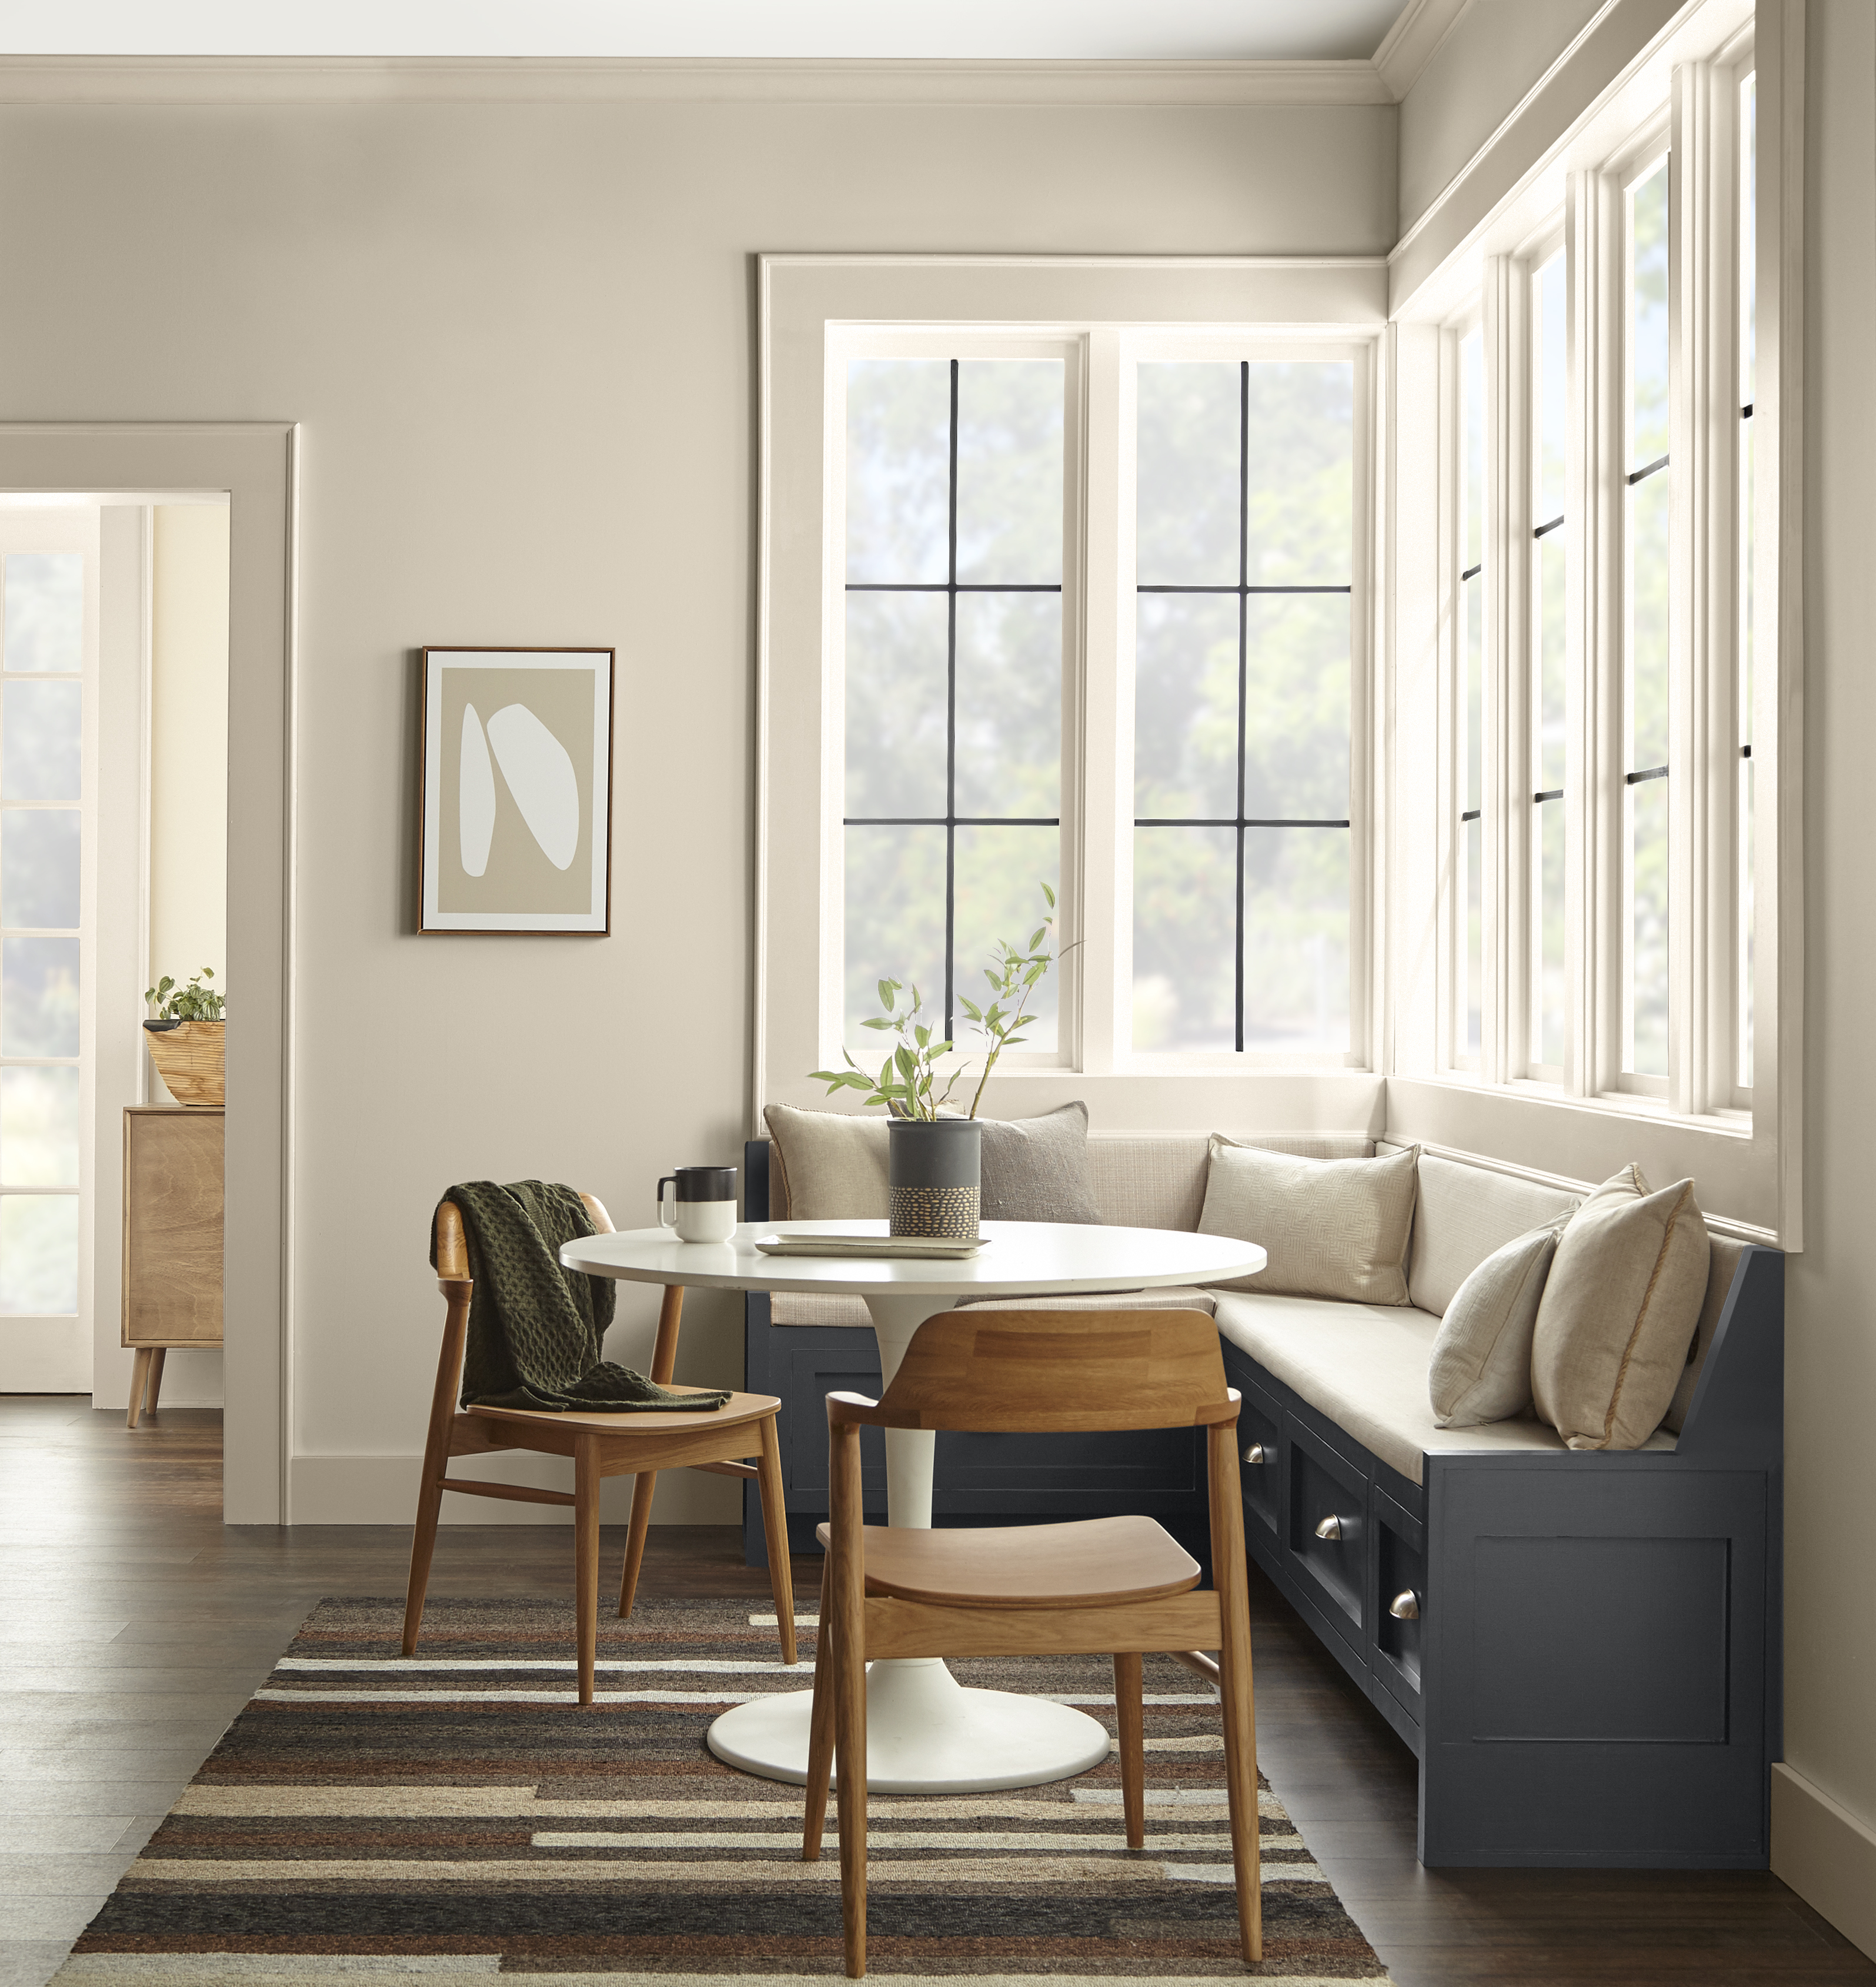 Un coin cuisine avec des murs peints en Encore plus beige et une banquette peinturée en un gris foncé contrastant.